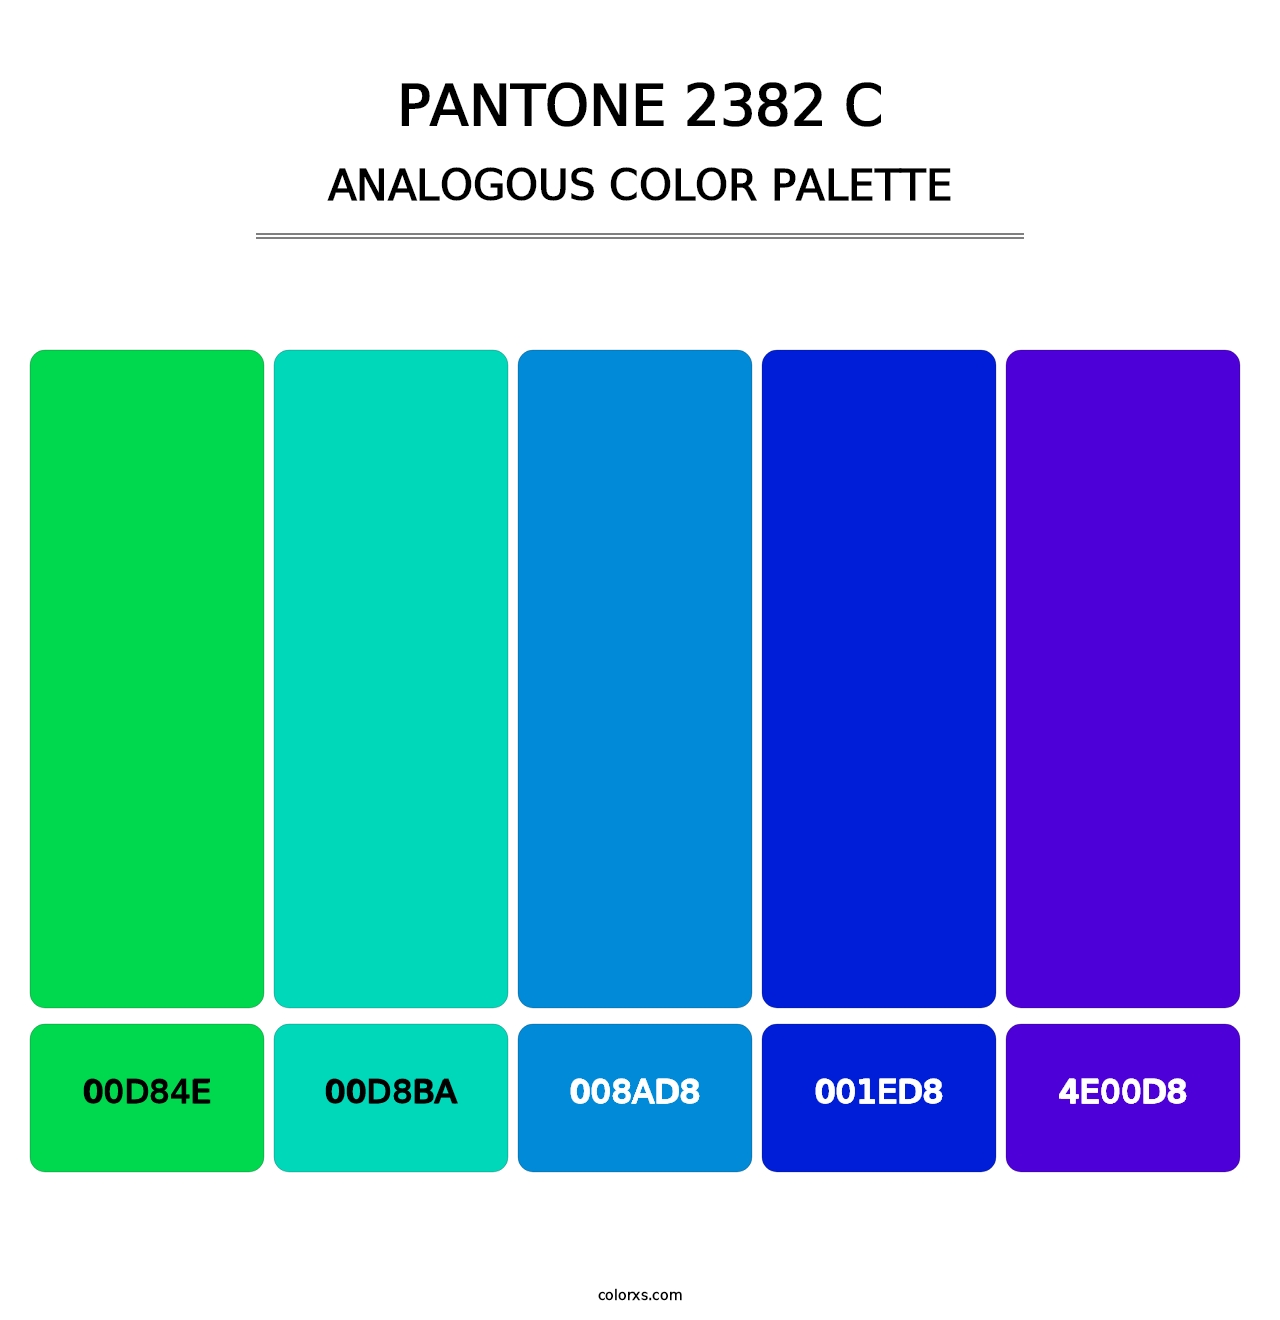 PANTONE 2382 C - Analogous Color Palette